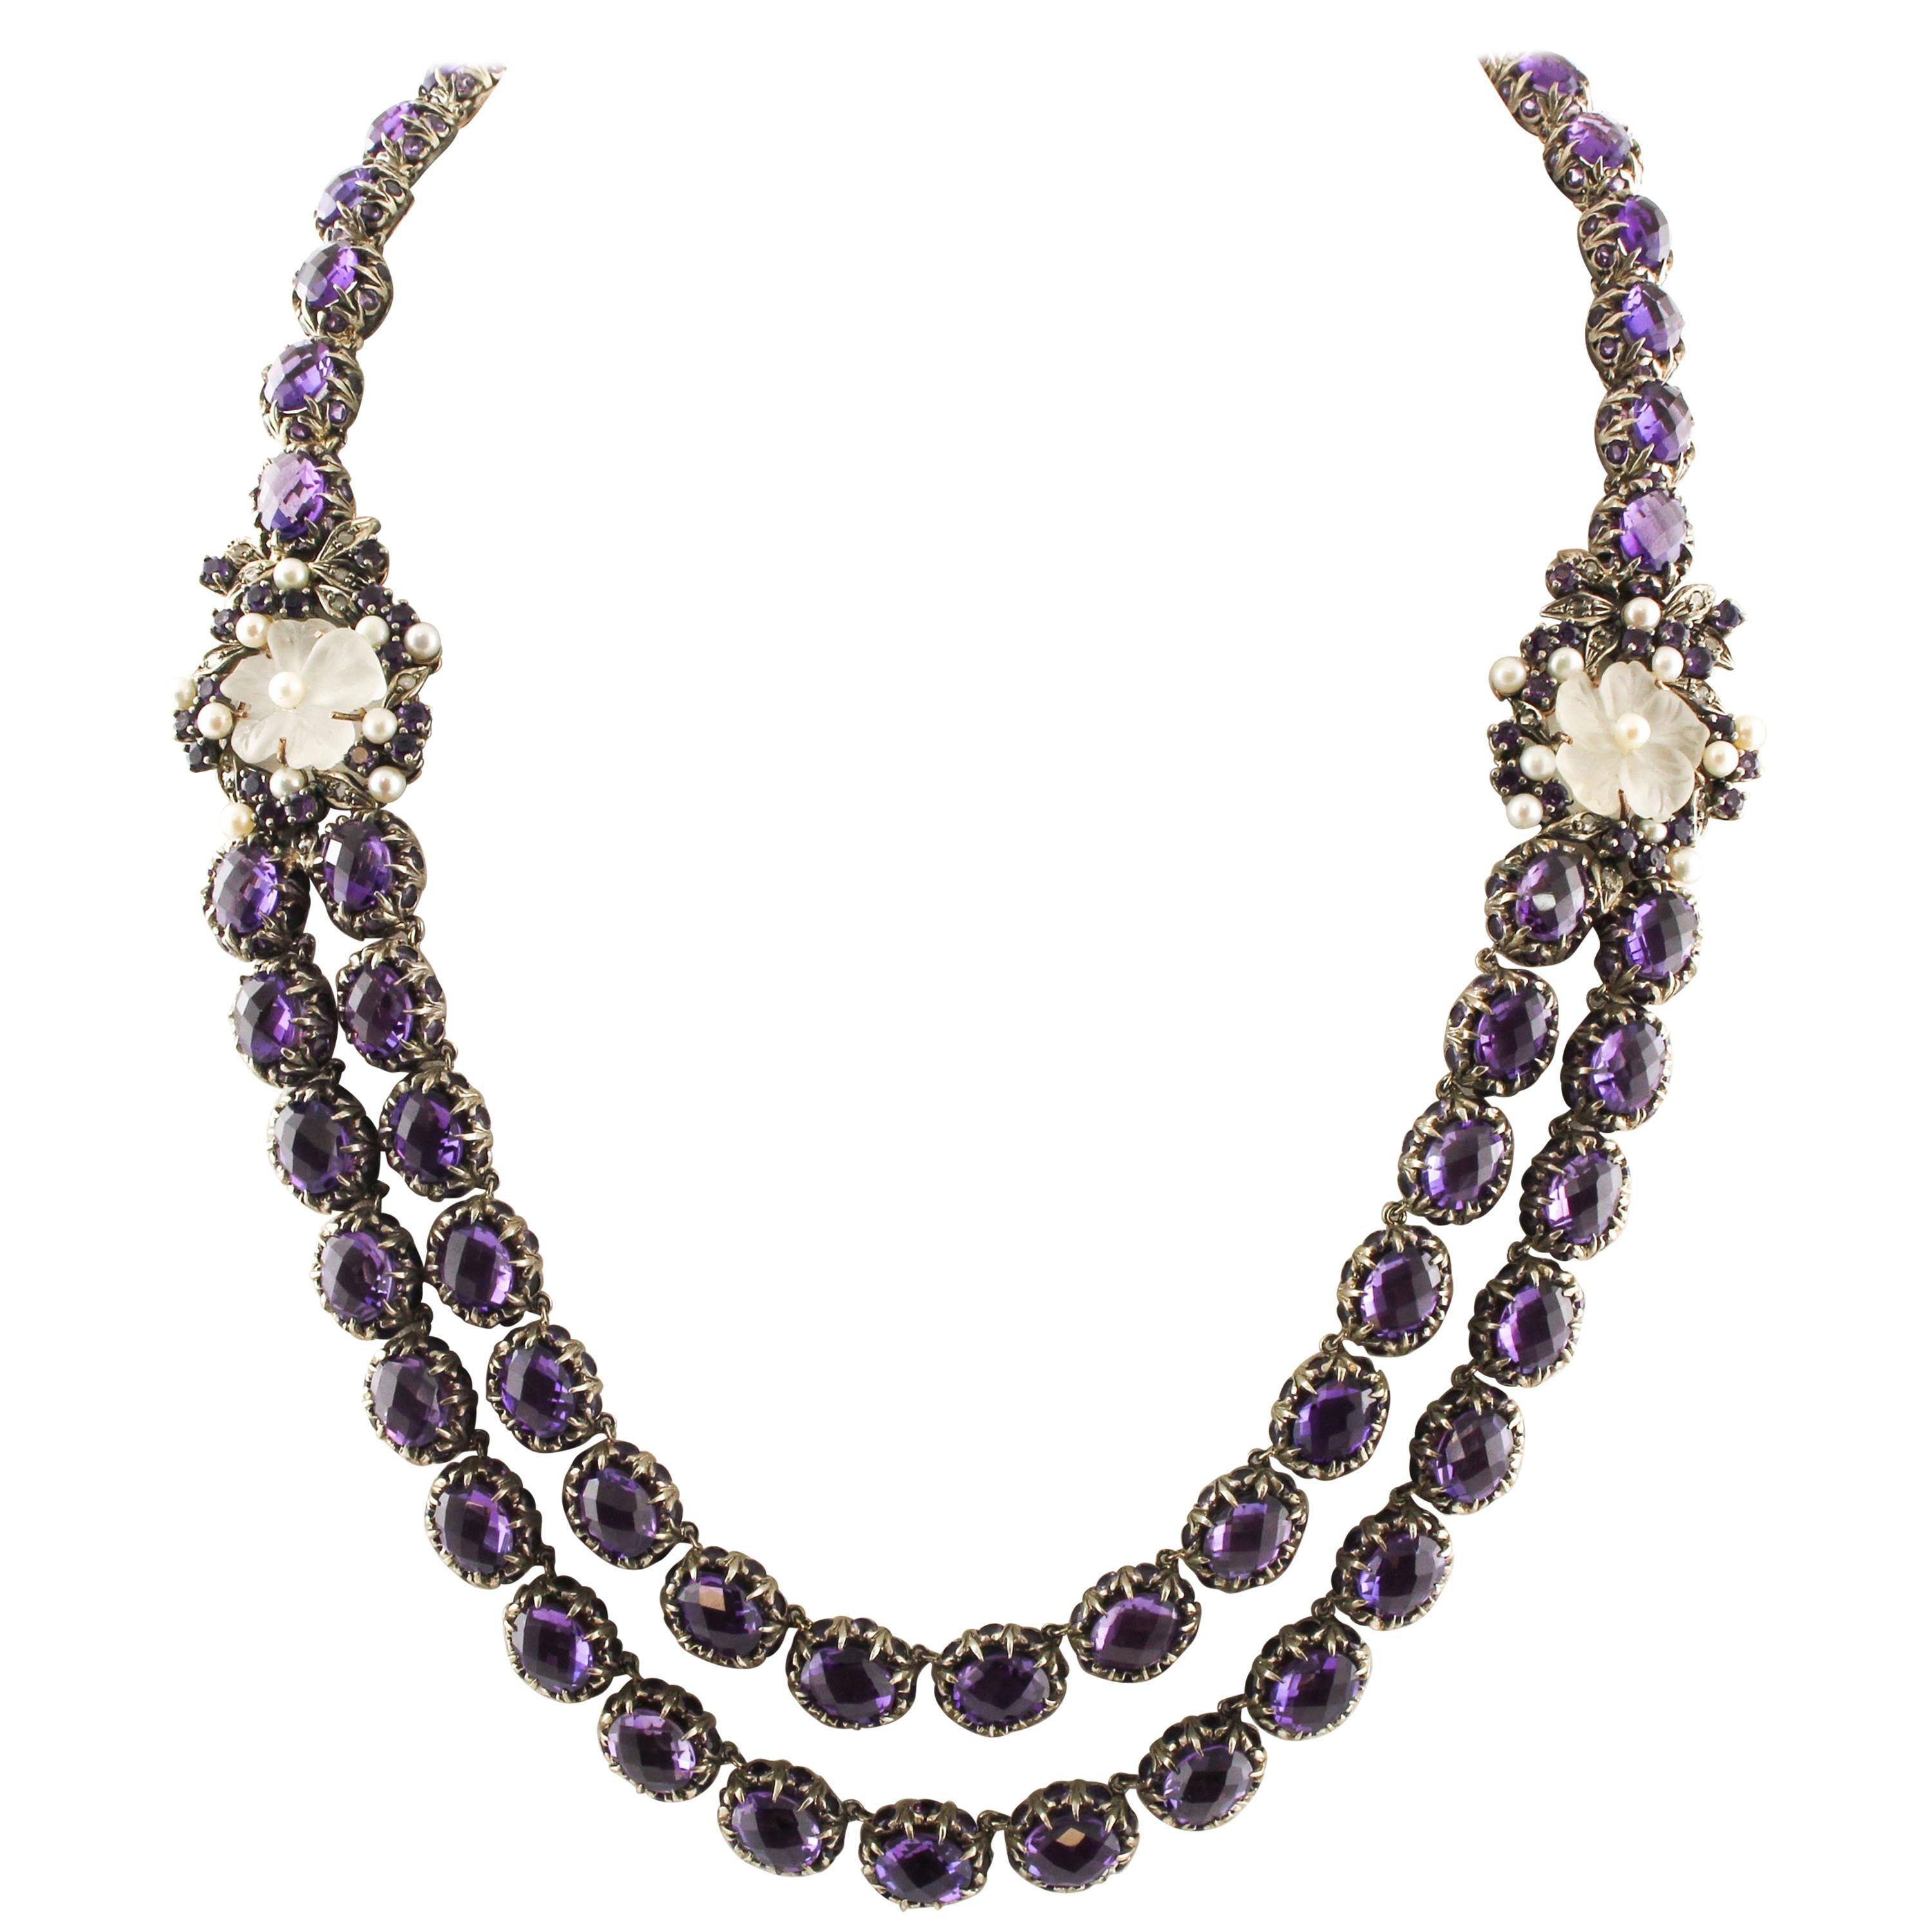 Halskette aus Roségold und Silber mit Diamanten, Amethysten und Bergkristall-Blumen und kleinen Perlen